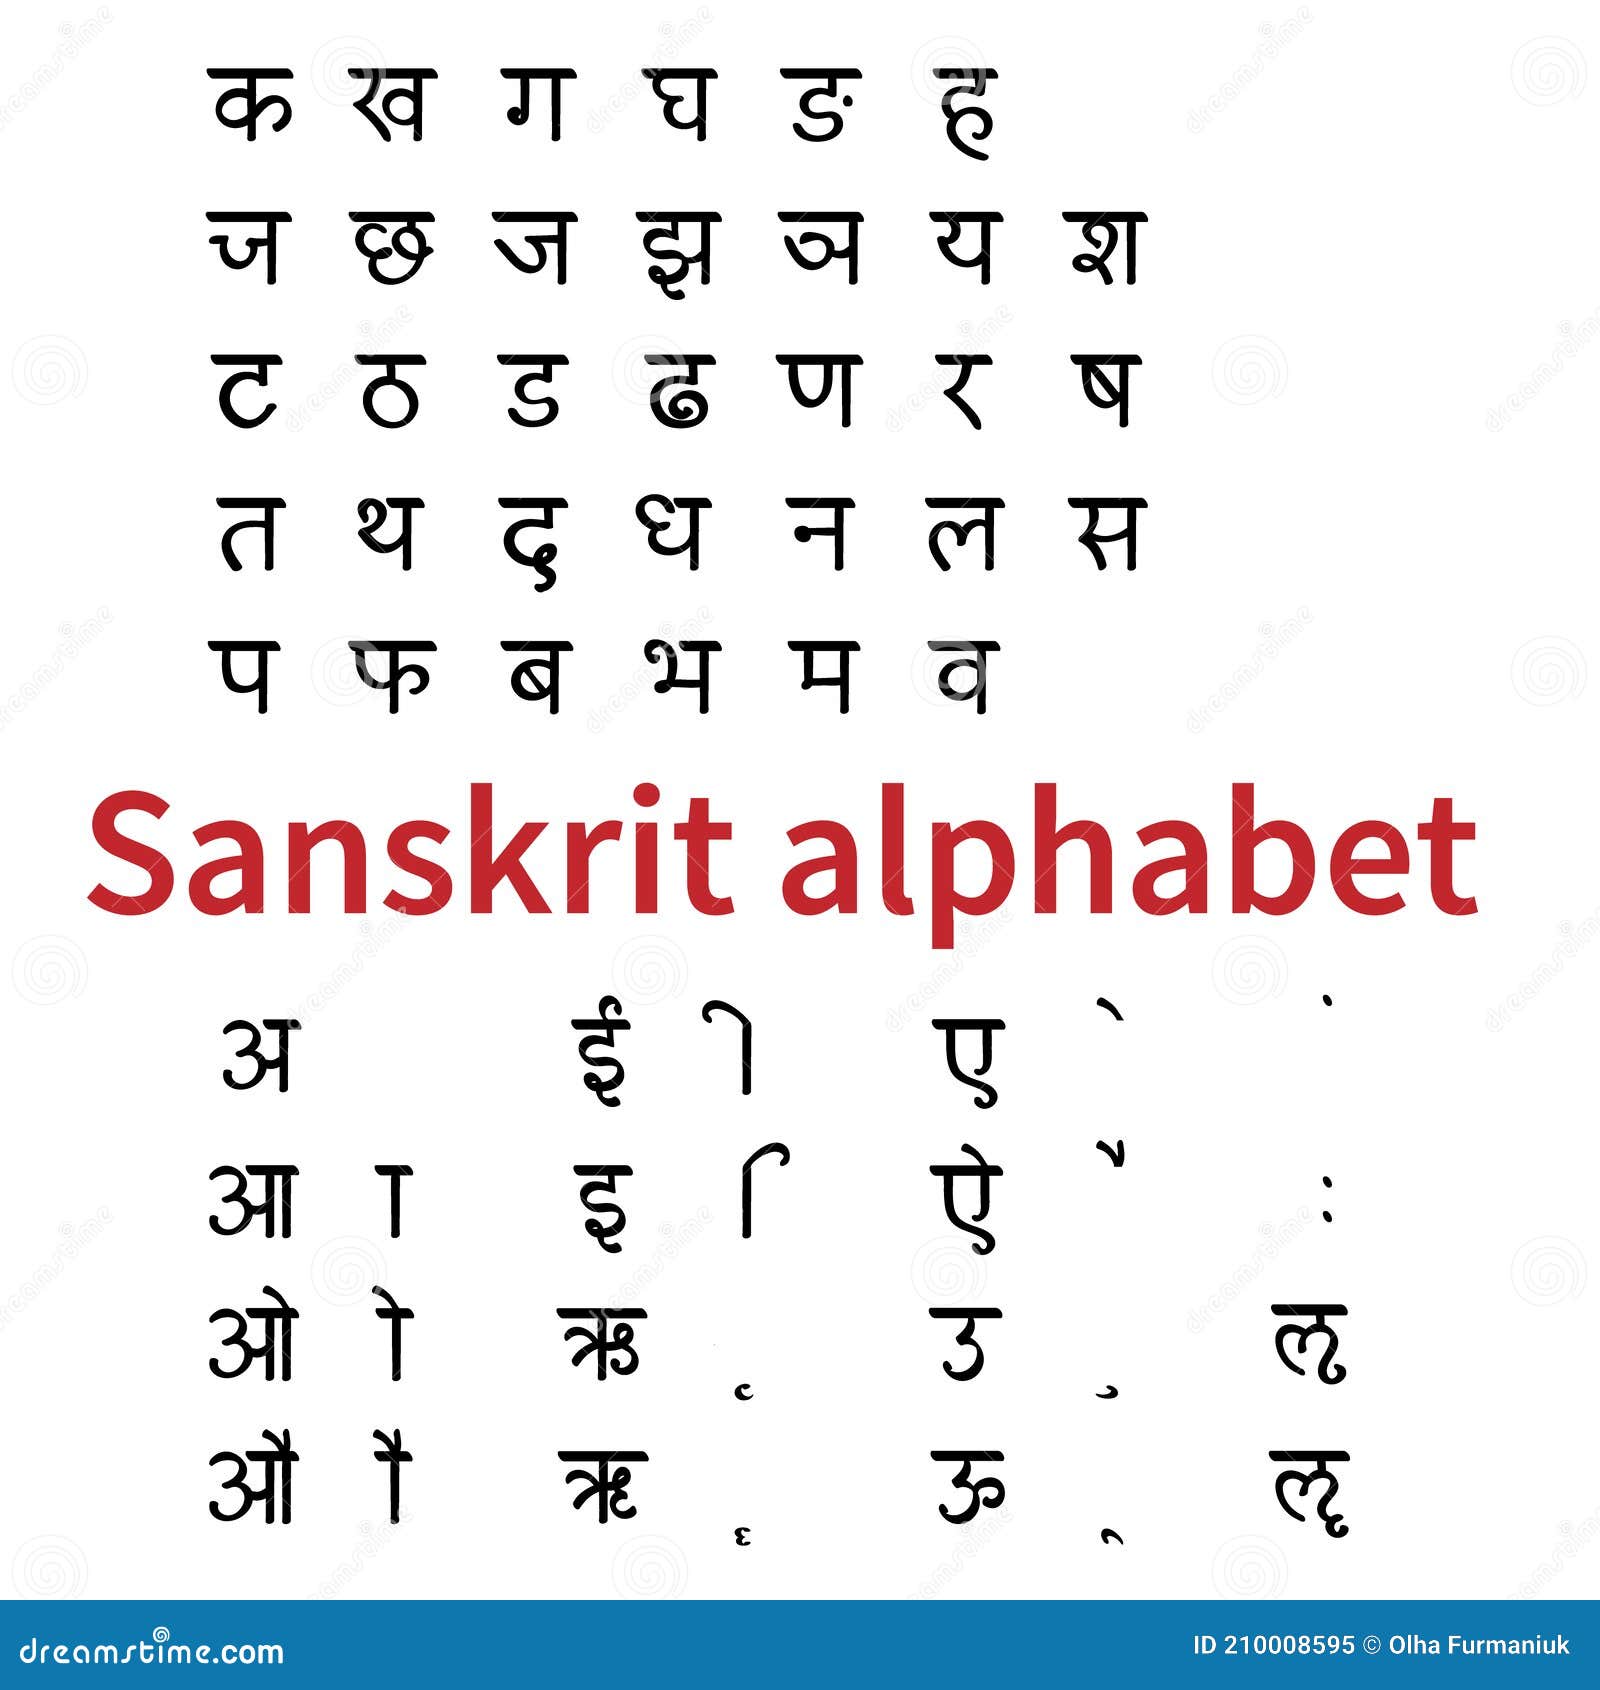 Sanskrit Alphabet Chart